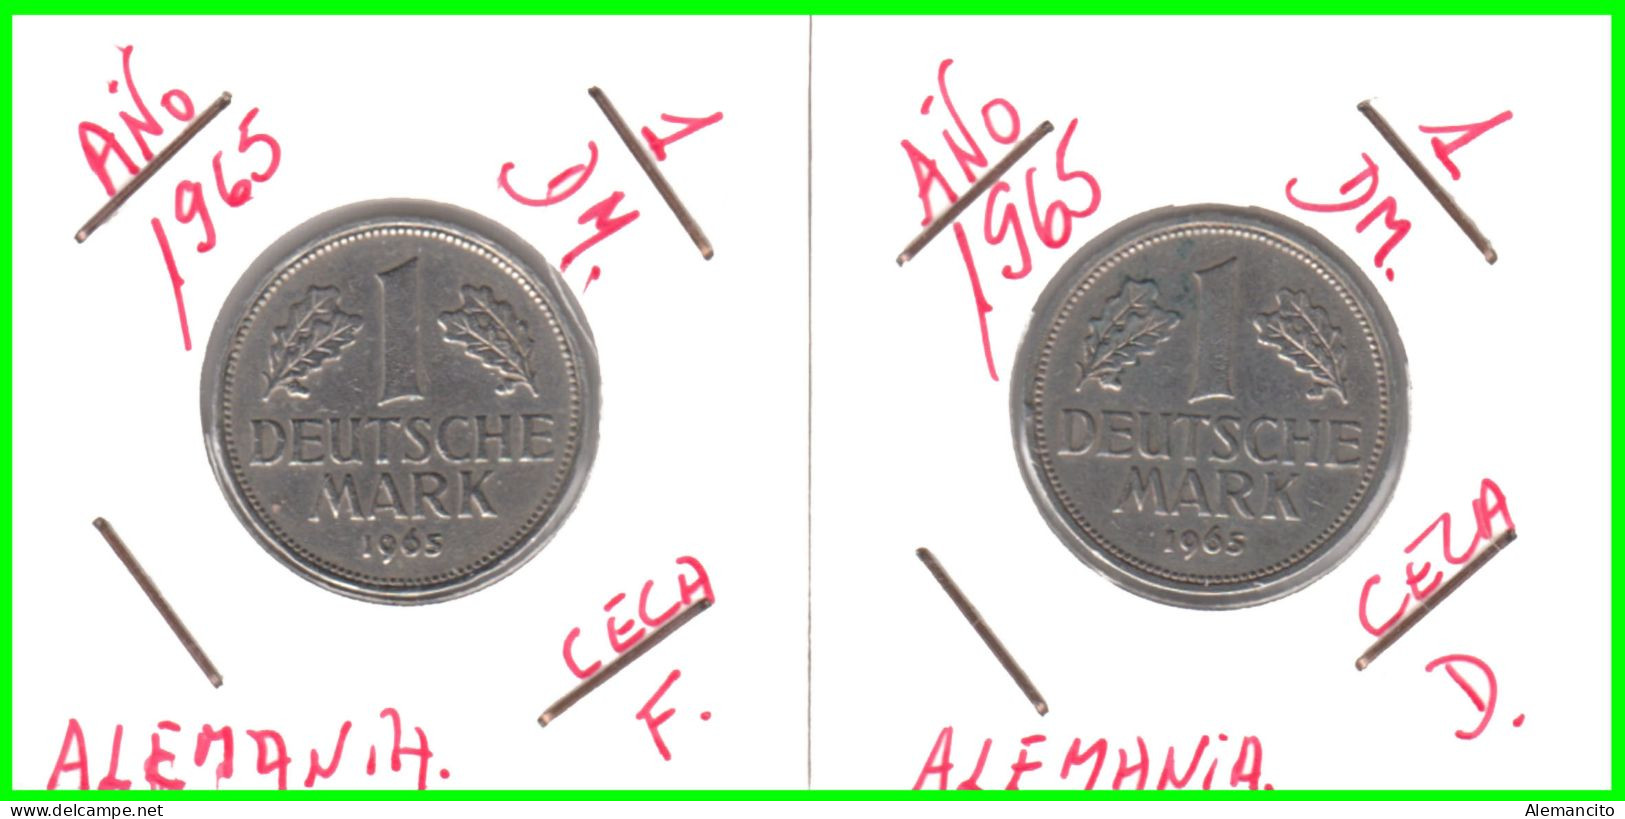 ALEMANIA - DEUTSCHLAND - GERMANY - 2 -MONEDAS DE 1.00 DM ESPIGAS Y AGUILA DEL AÑO 1965 CON LAS CECAS - D - F. - 1 Marco